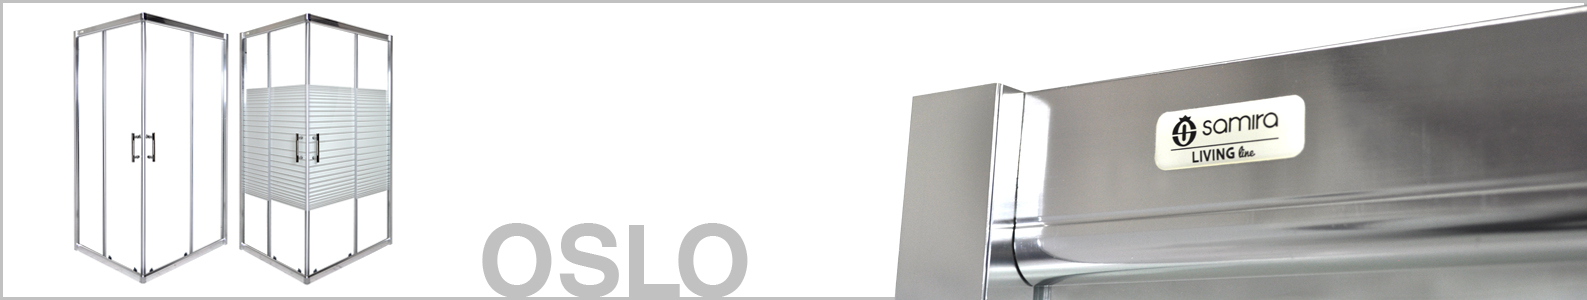 Box doccia angolare 80×100 Oslo, cabina doccia in cristallo serigrafato 6 mm Arredo